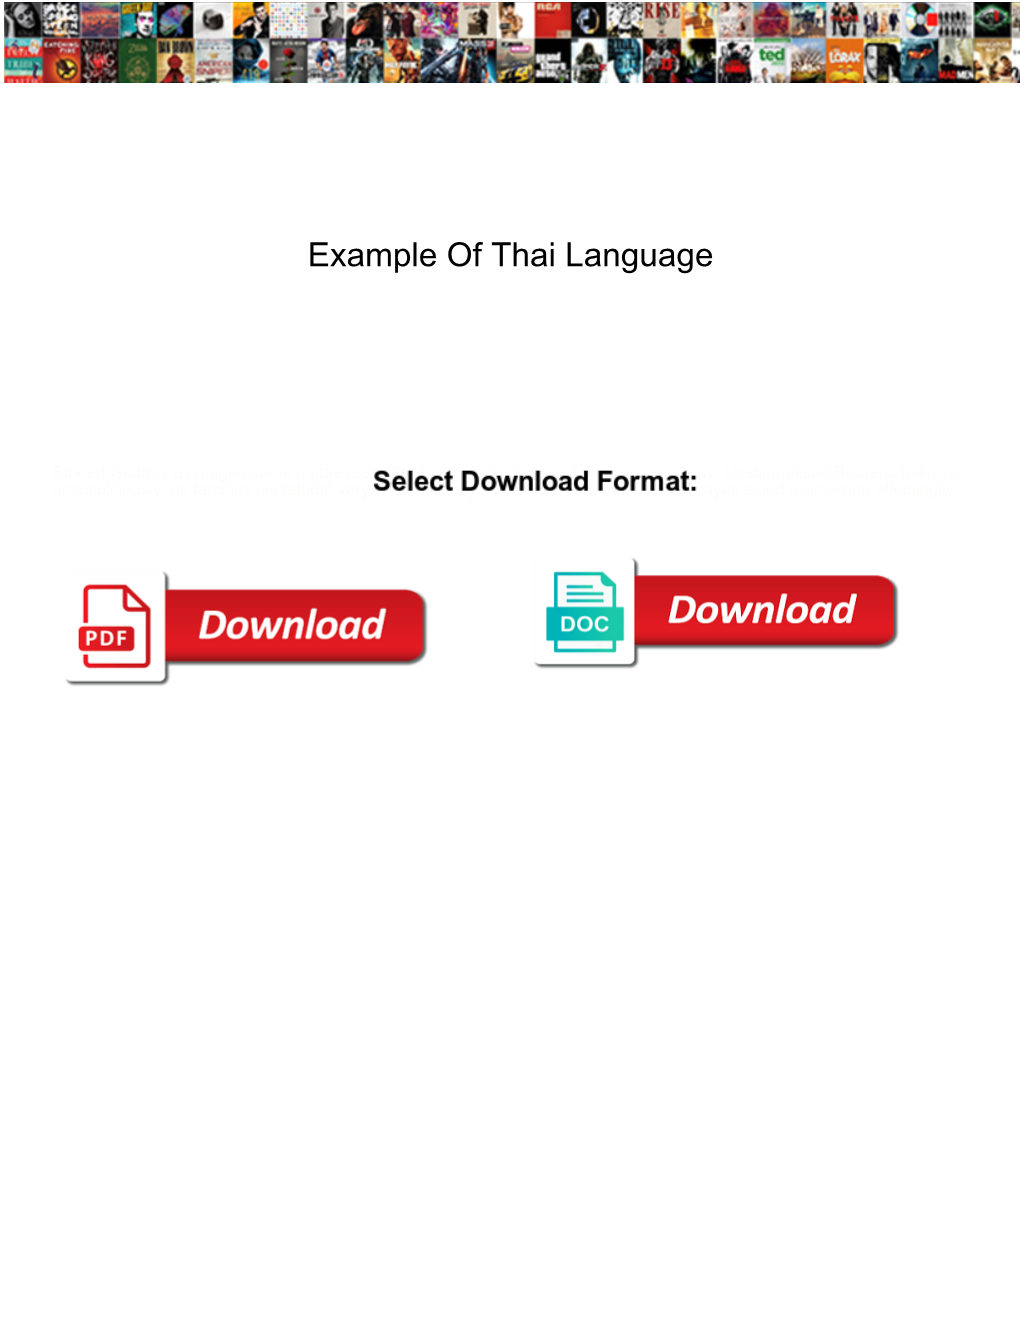 Example of Thai Language